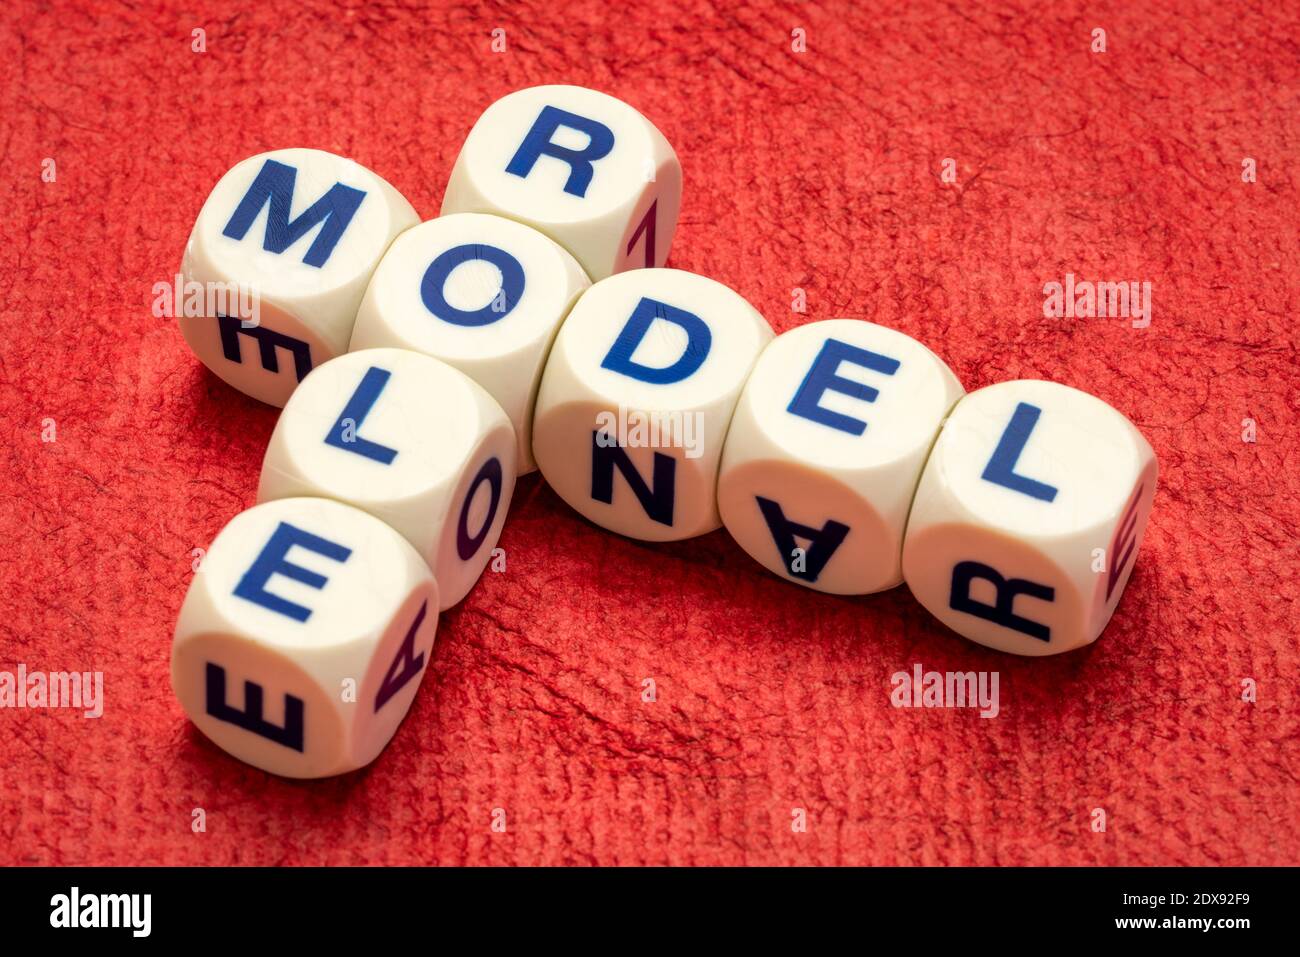 modello di ruolo crossword in lettere dice contro carta testurizzata fatta a mano, ispirazione e concetto di leadership Foto Stock